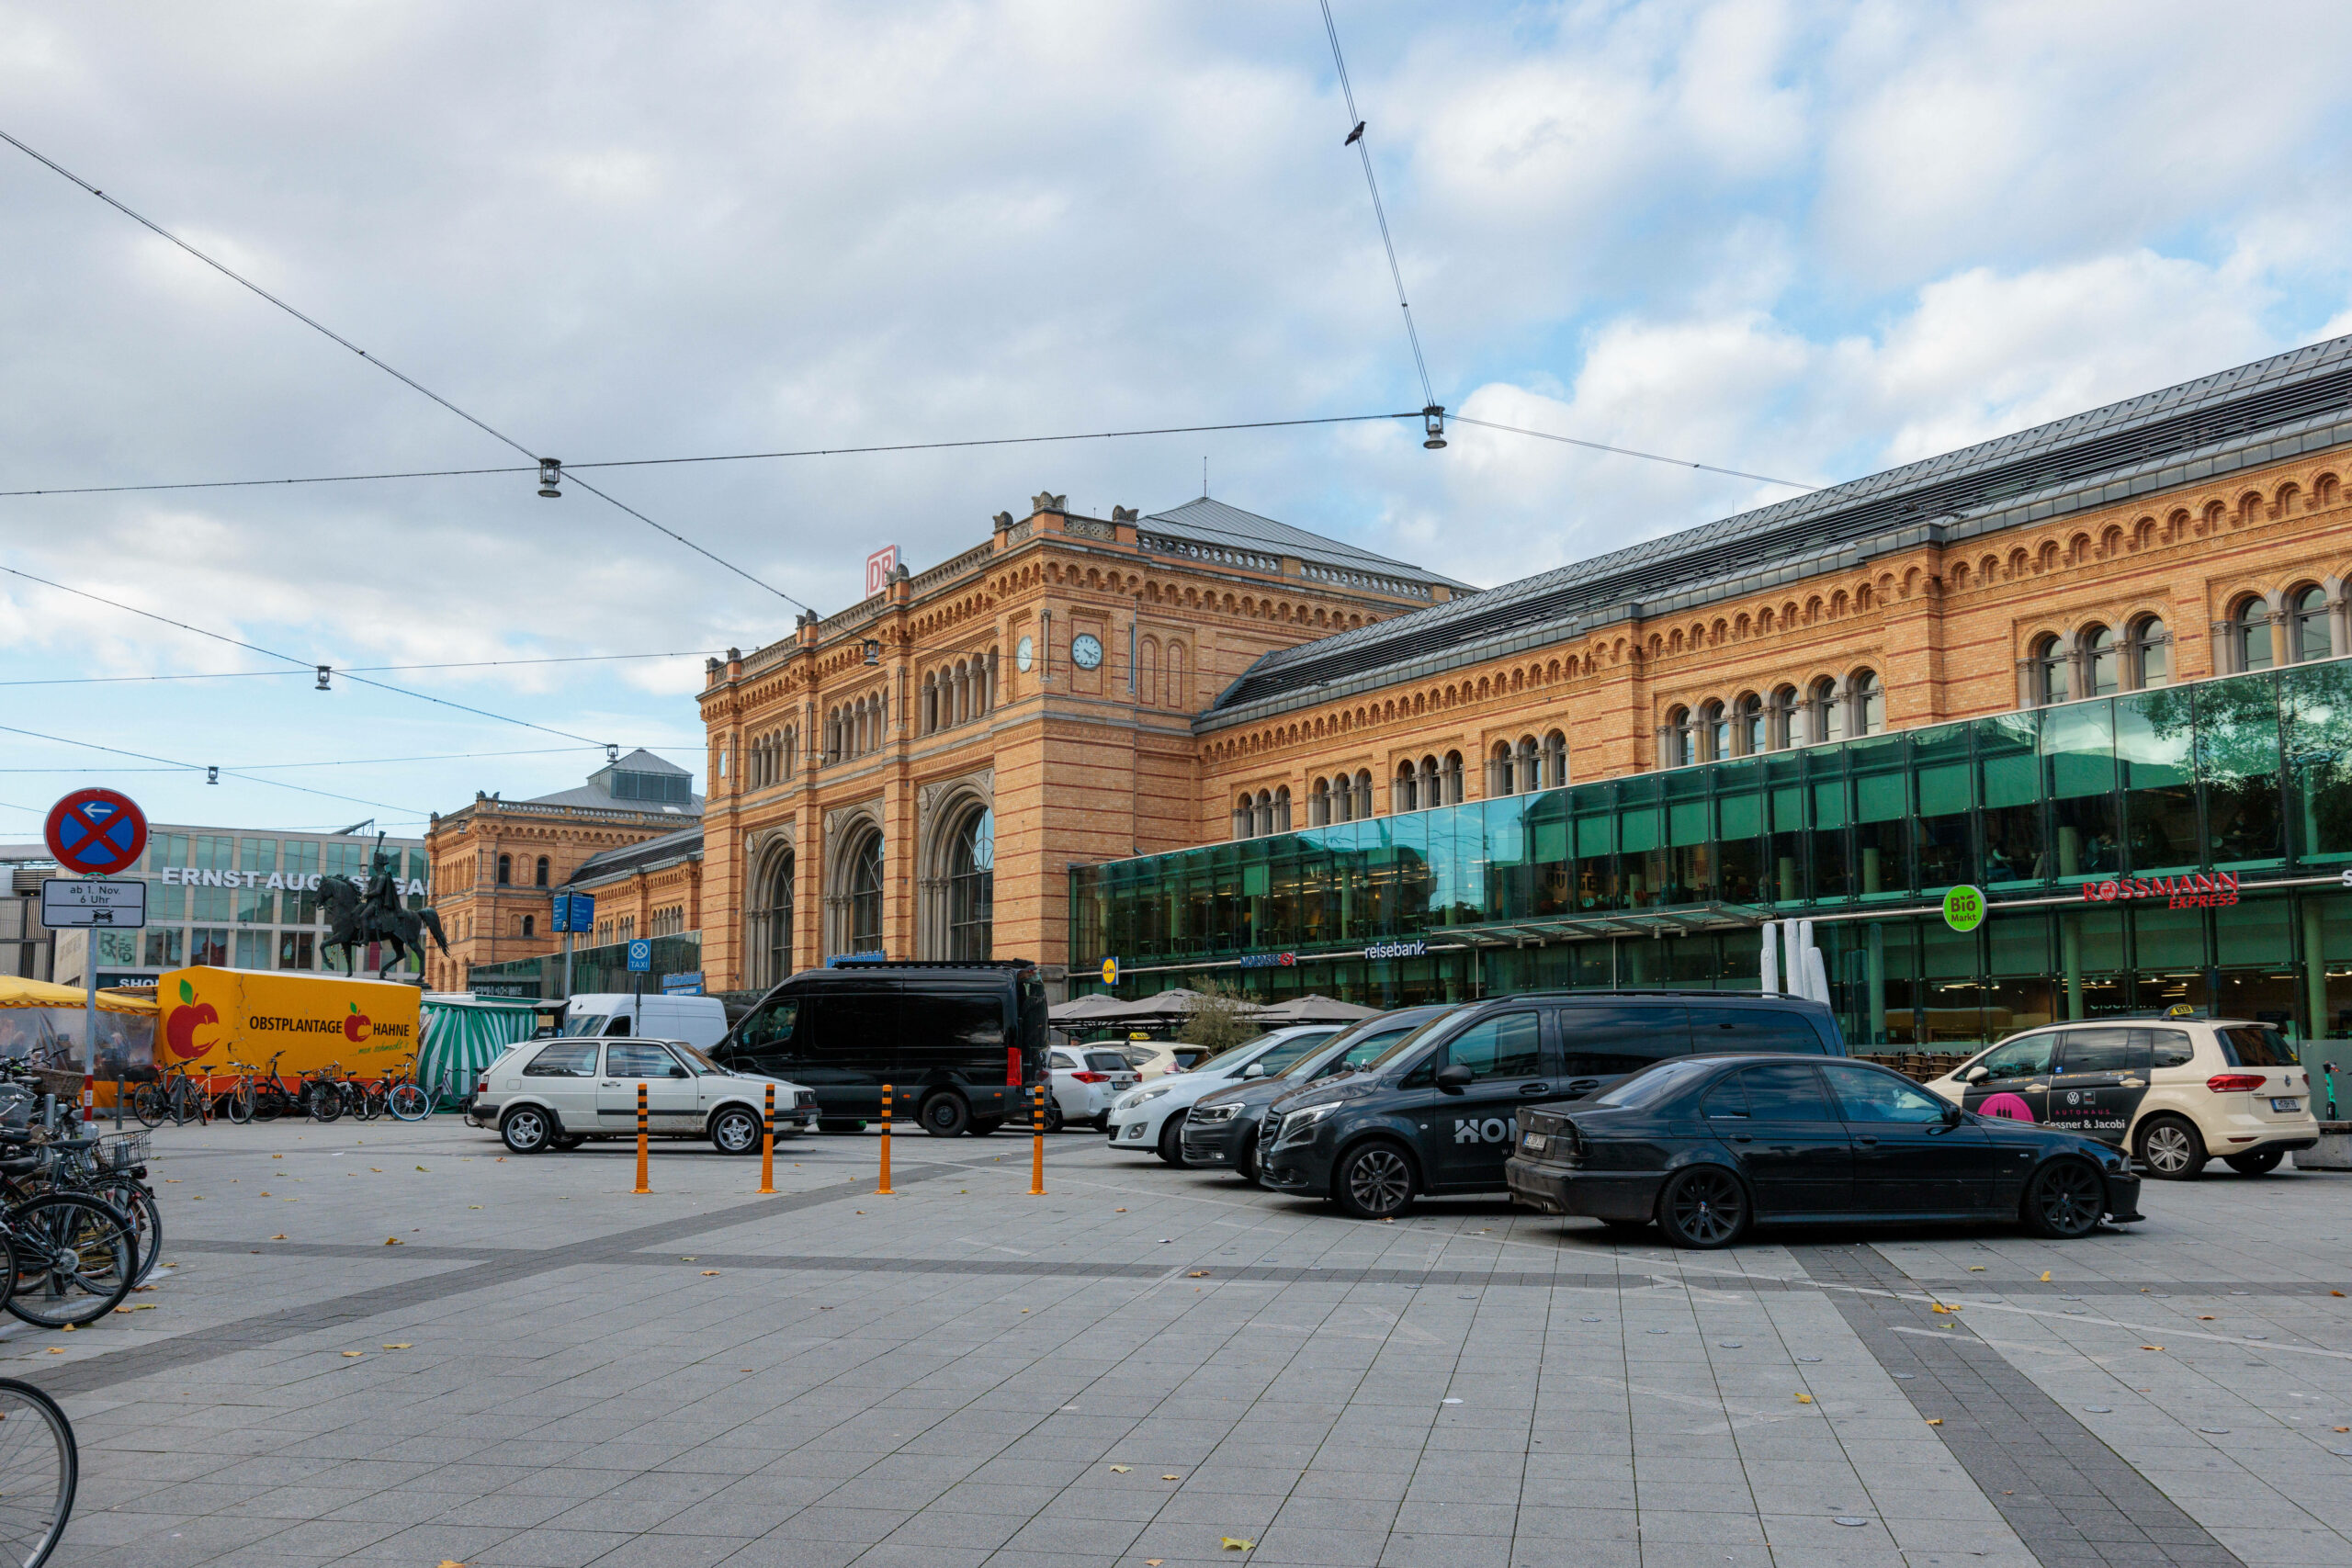 Der Hauptbahnhof Hannover von außen